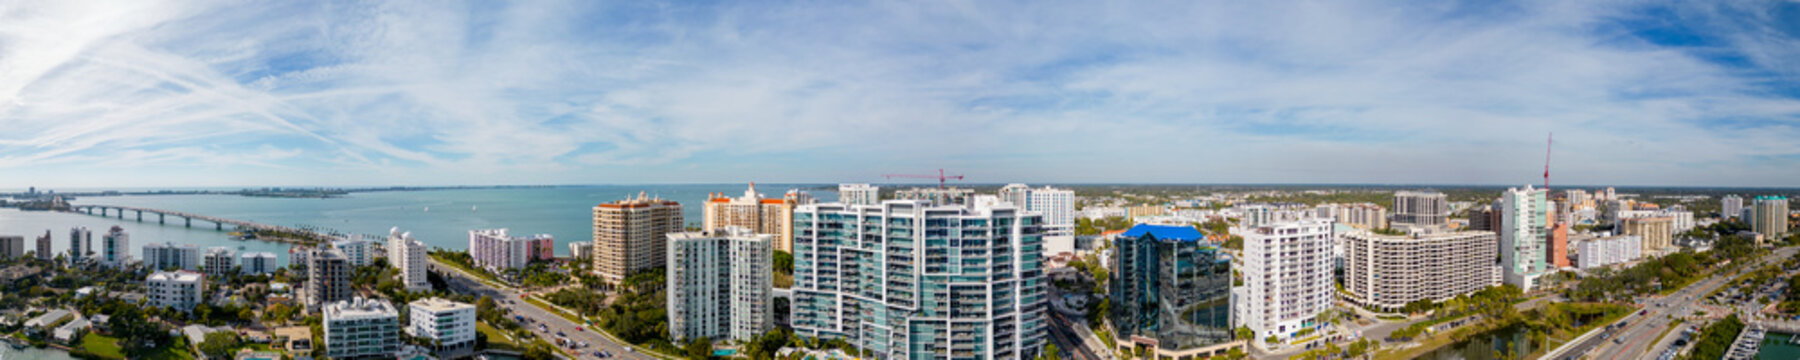 Aerial panorama buildings at Downtown Sarasota Florida USA